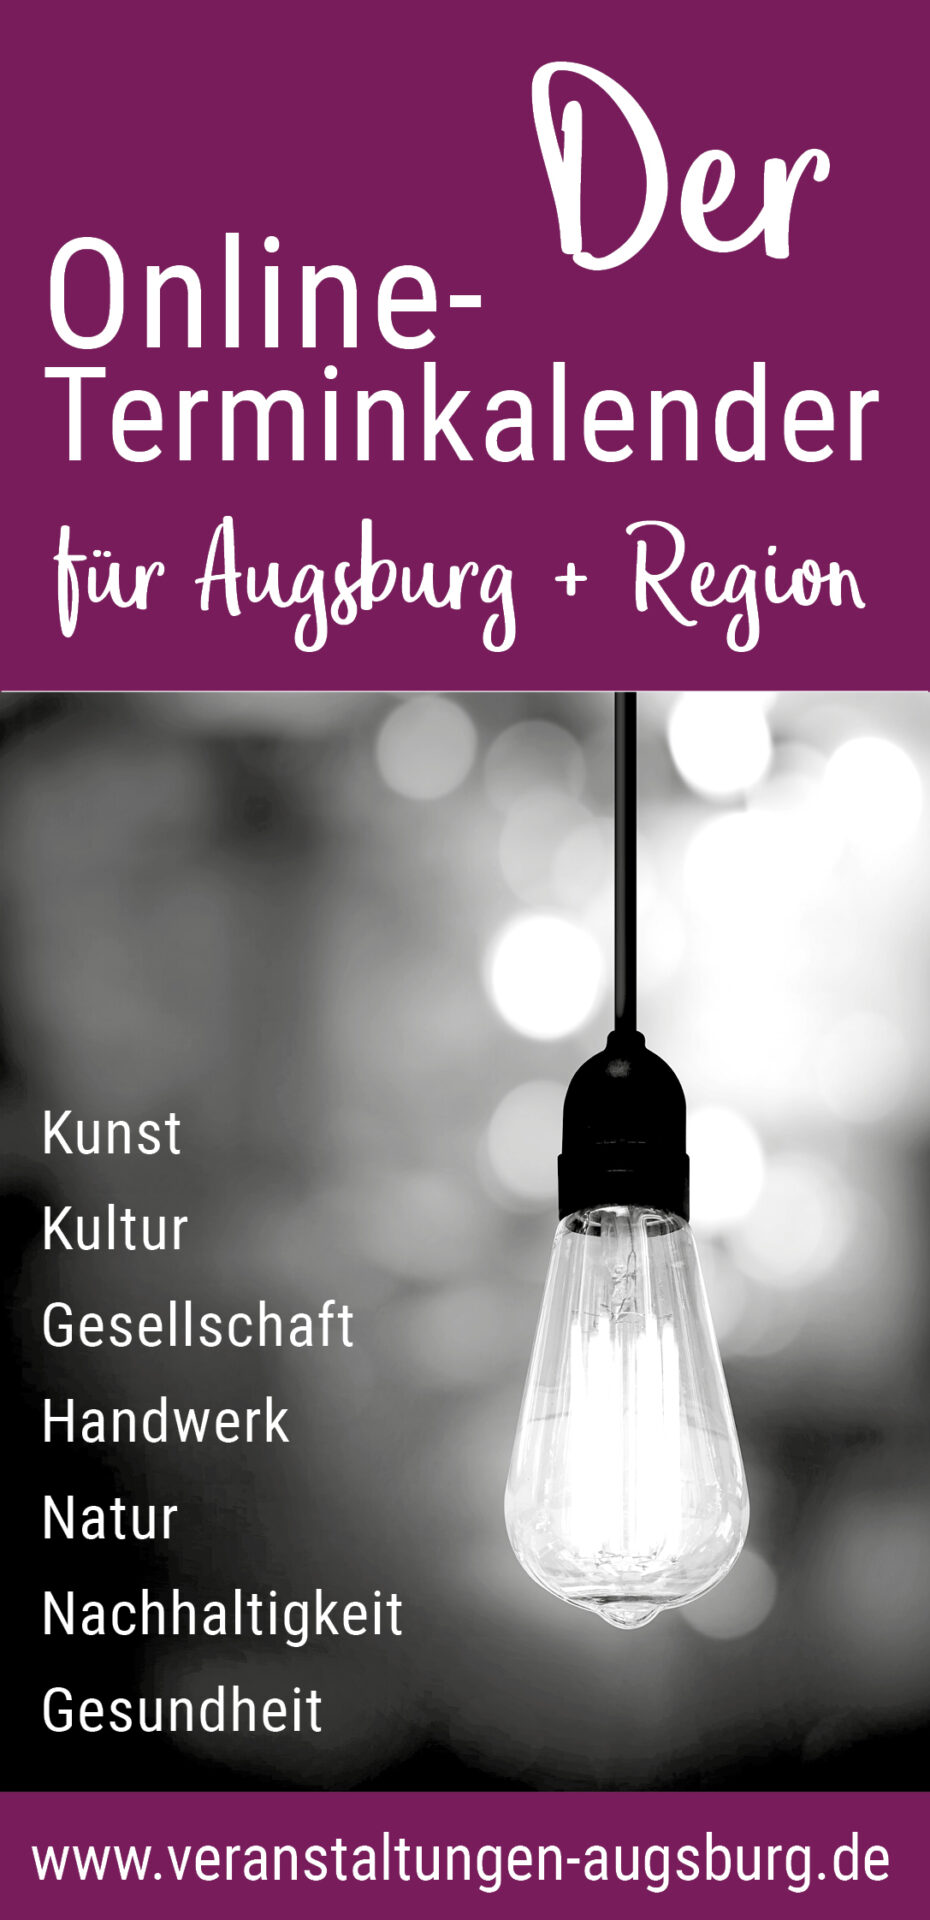 Veranstaltungskalender Terminkalender Augsburg